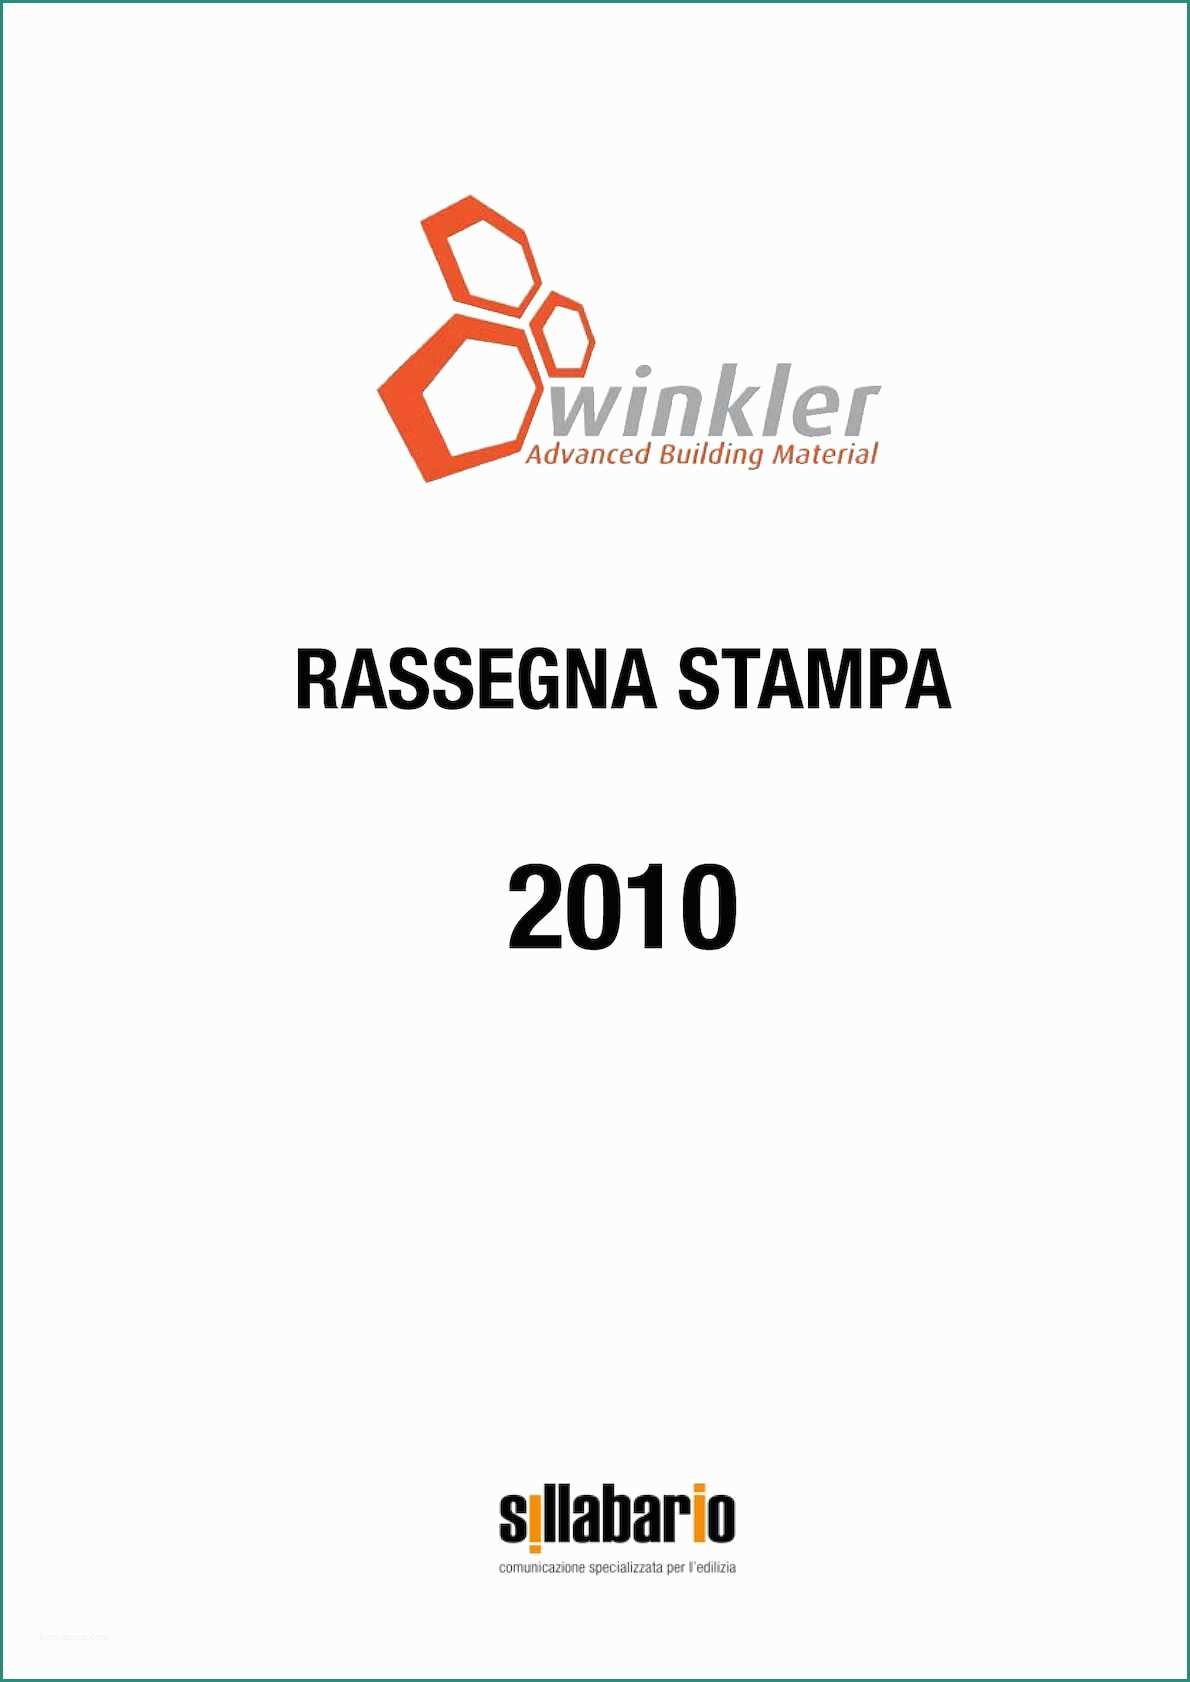 Cappotto Fassa Bortolo E Calaméo Winkler Rassegna Stampa 2010